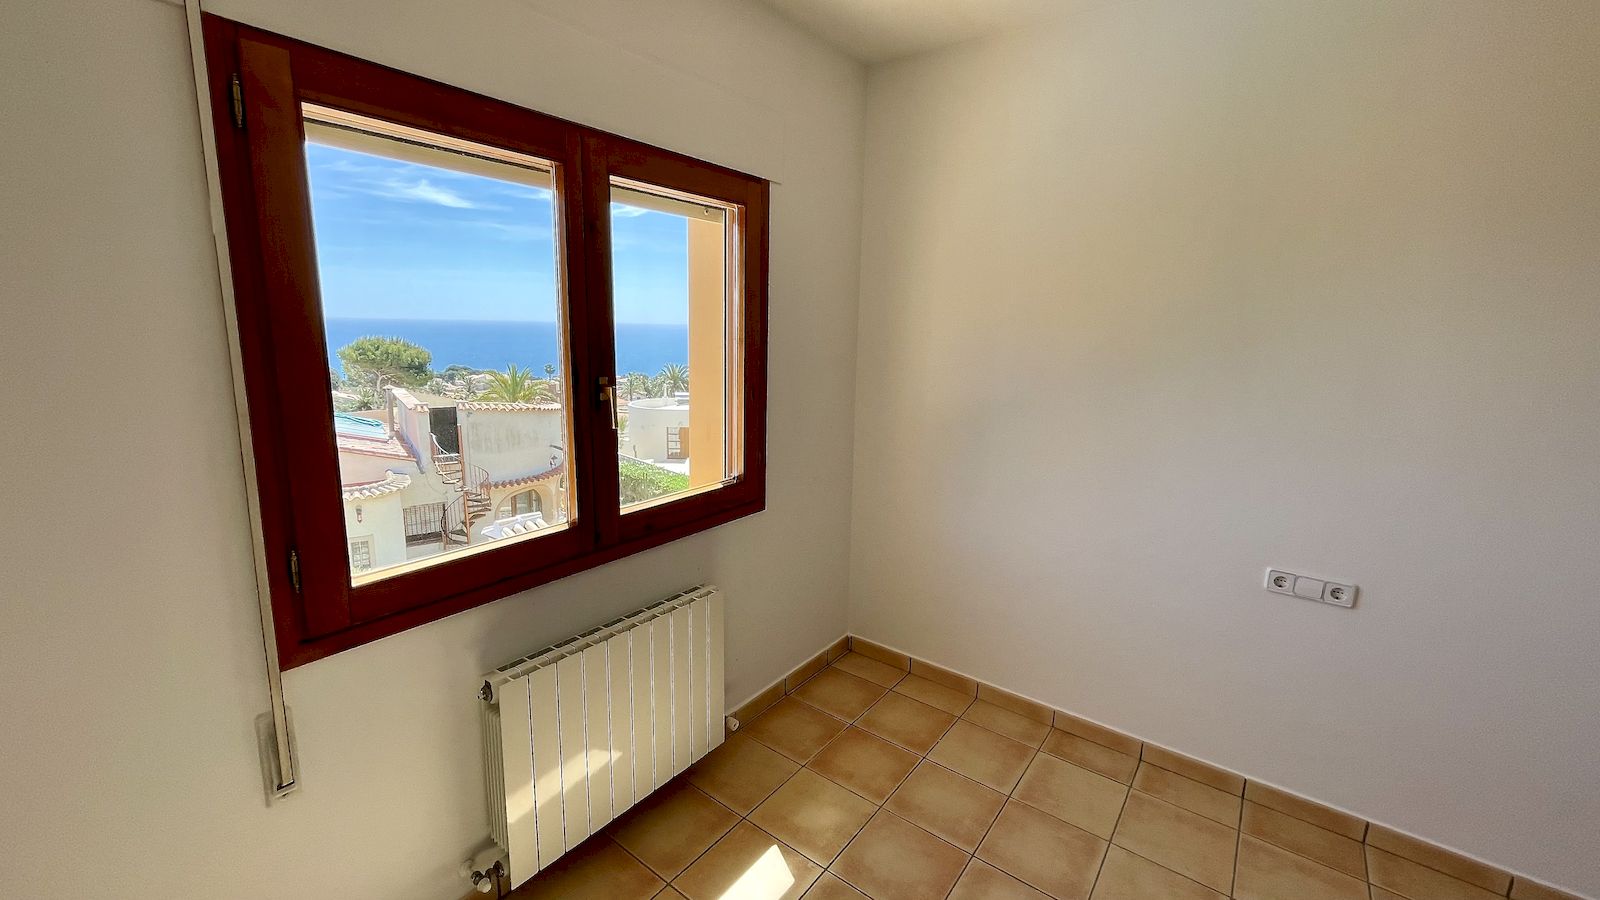 Villa for Sale with Sea View in Balcon al Mar - Javea